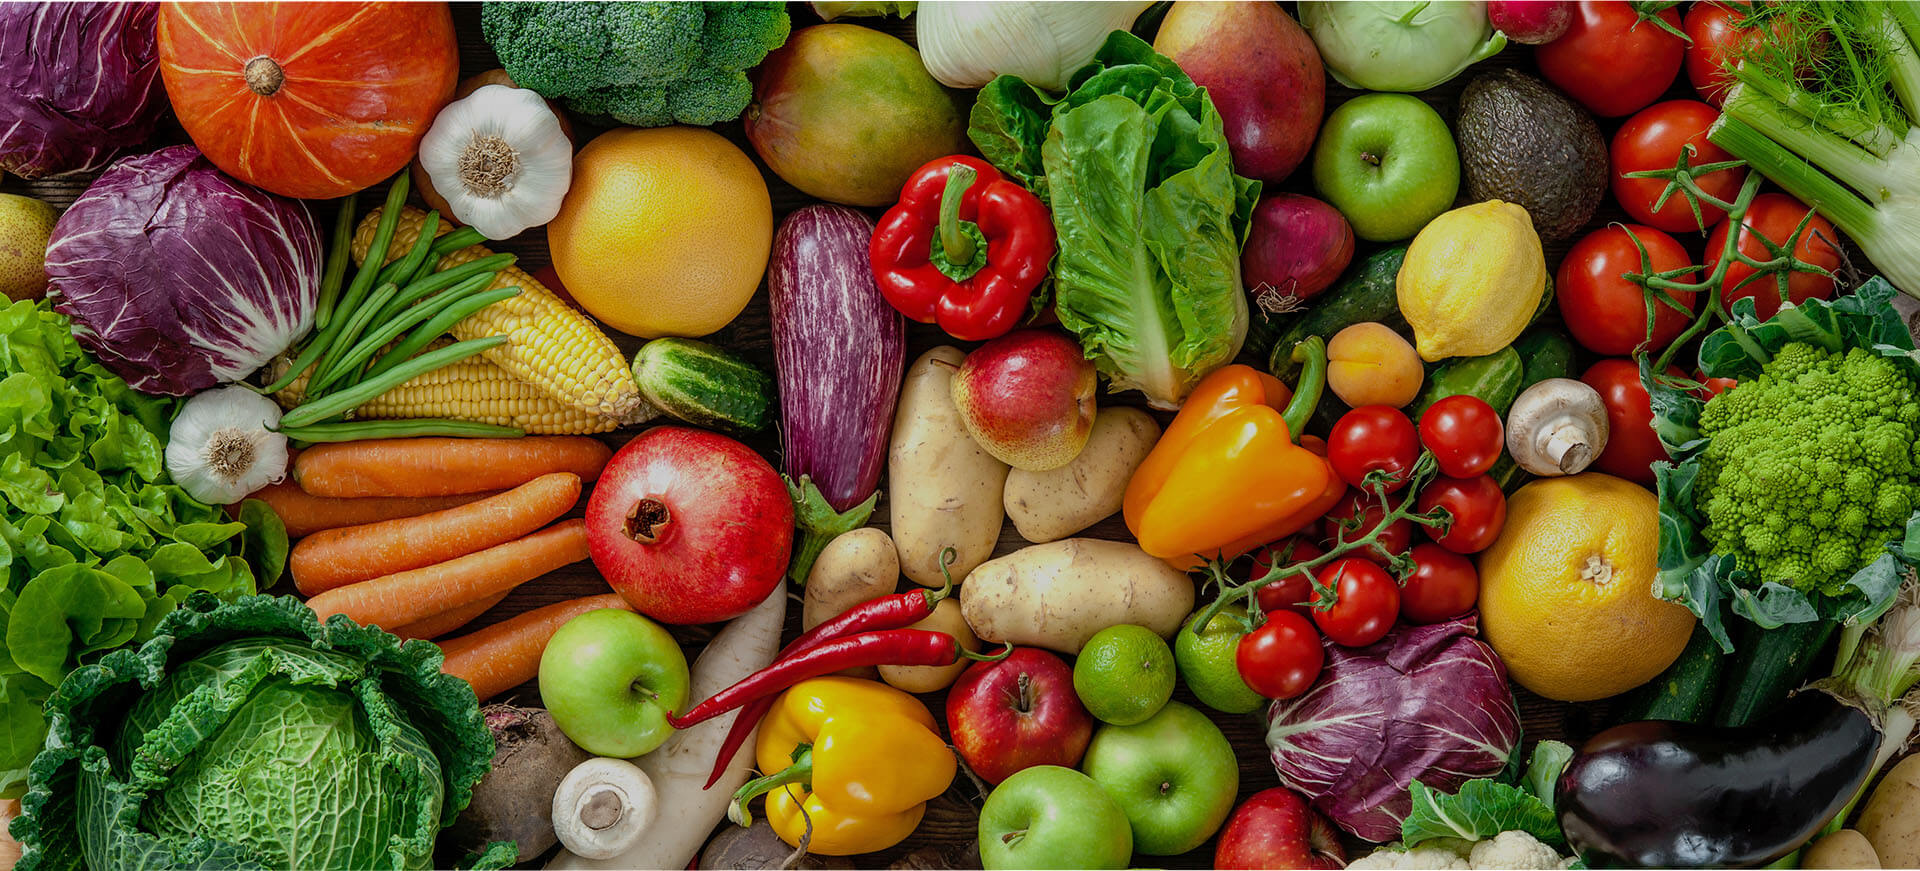 Grzyby, warzywa, owoce oraz dziczyzna